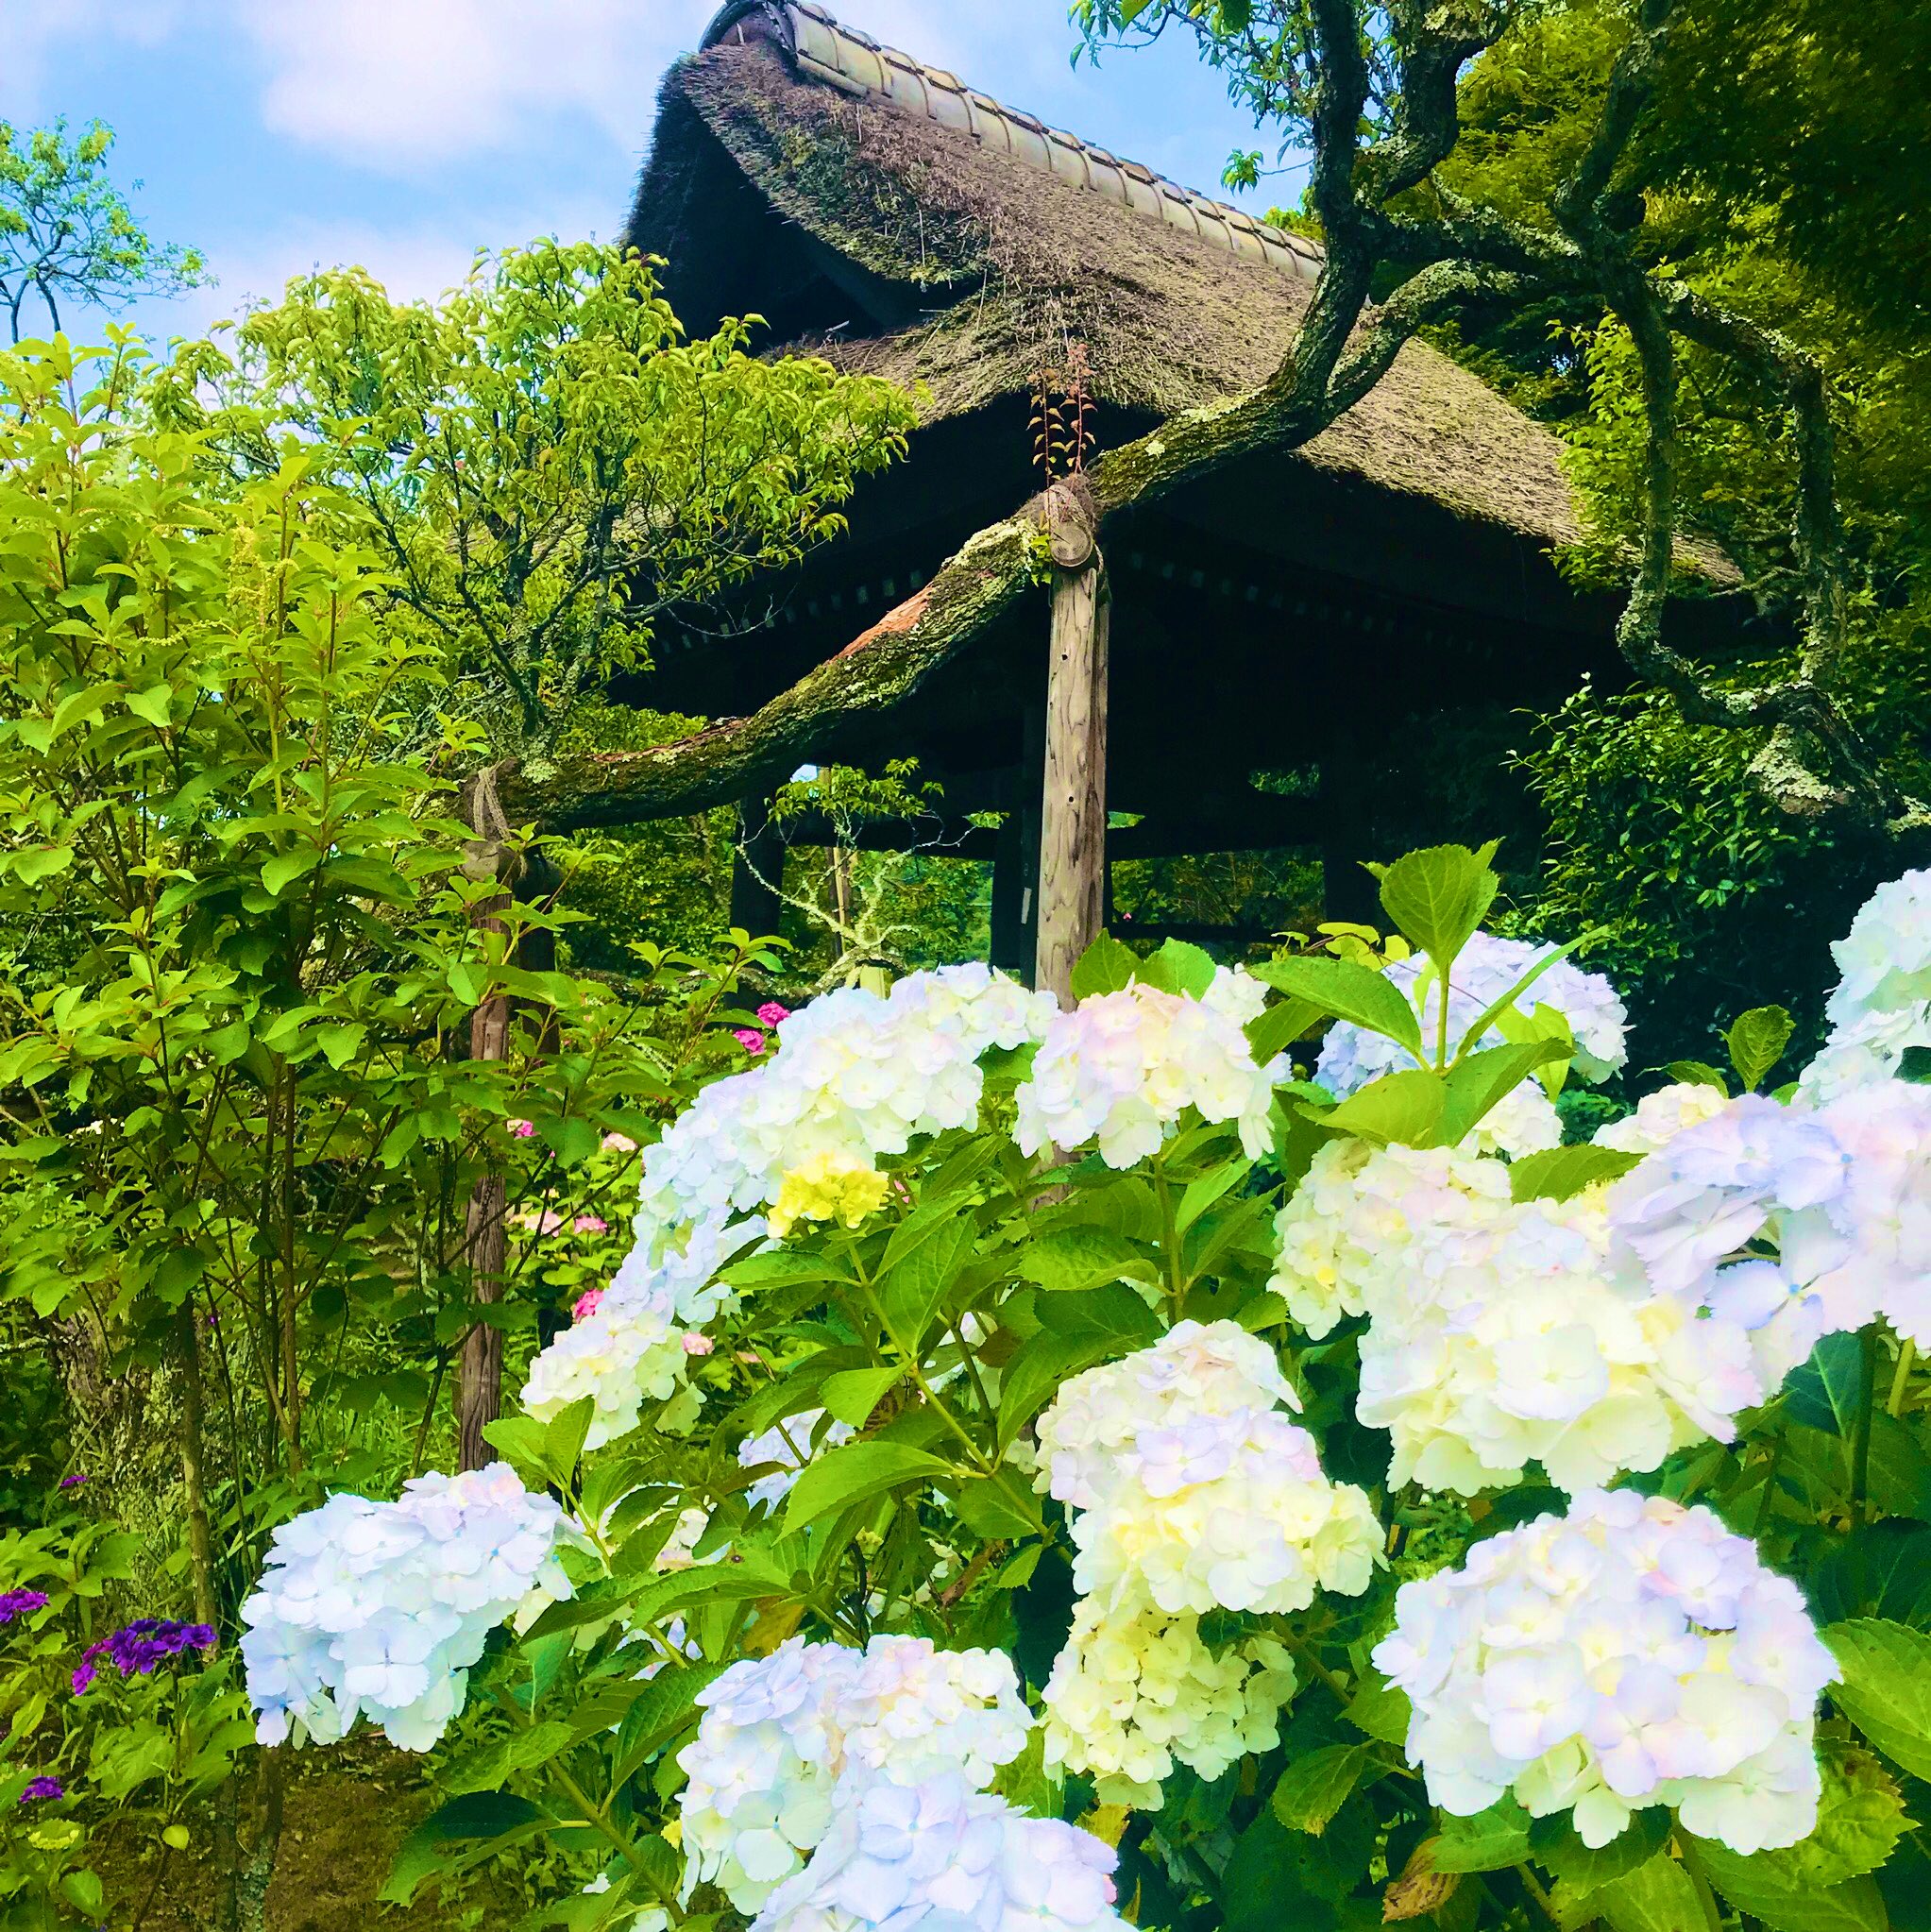 西東 東慶寺 先週 紫陽花を見に鎌倉へ行ってきました 東慶寺には以前も紫陽花 を見に行きましたが 今年も綺麗に見頃を迎えていました 紫陽花や菖蒲の寒色系の色合いがとても好みなので どの品種も見ていて楽しいものです 限定公開の岩肌を覆う